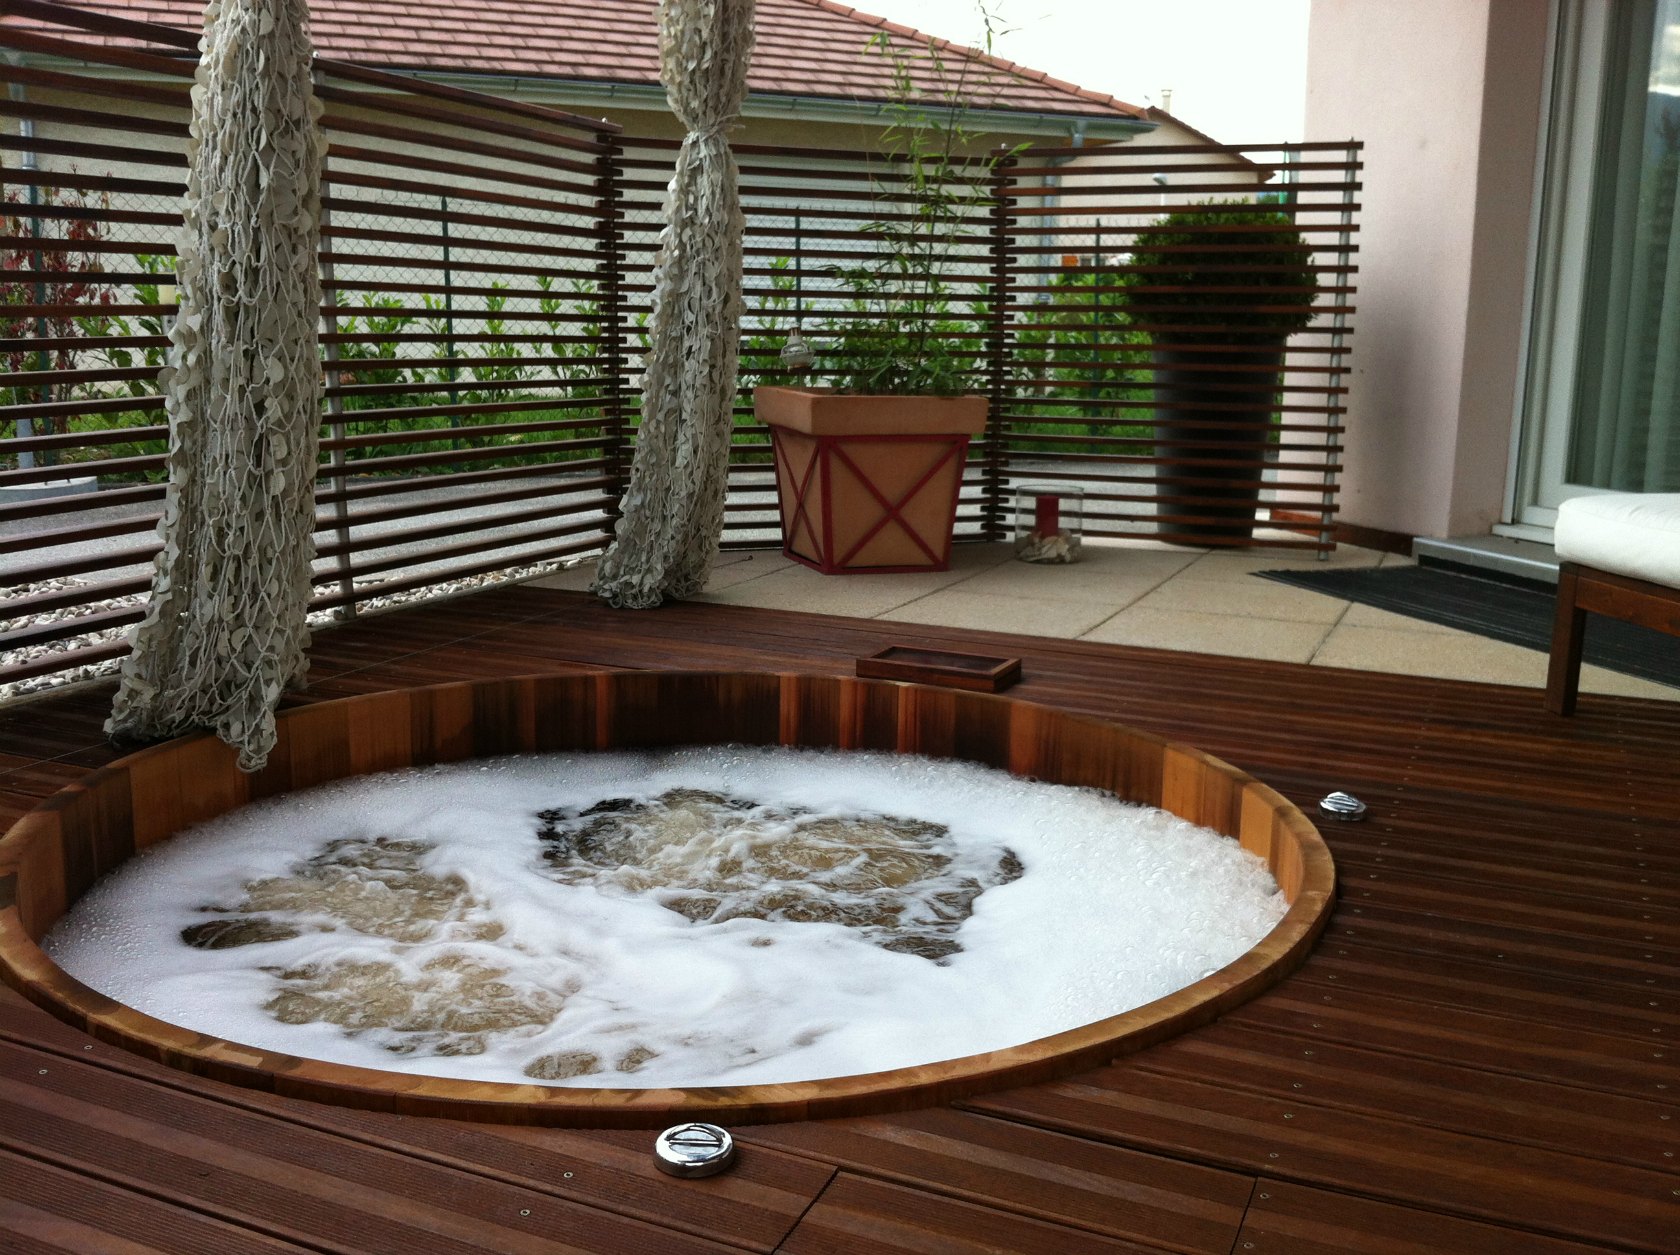 Une baignoire d'extérieur design par Goodland est chauffée au feu de bois